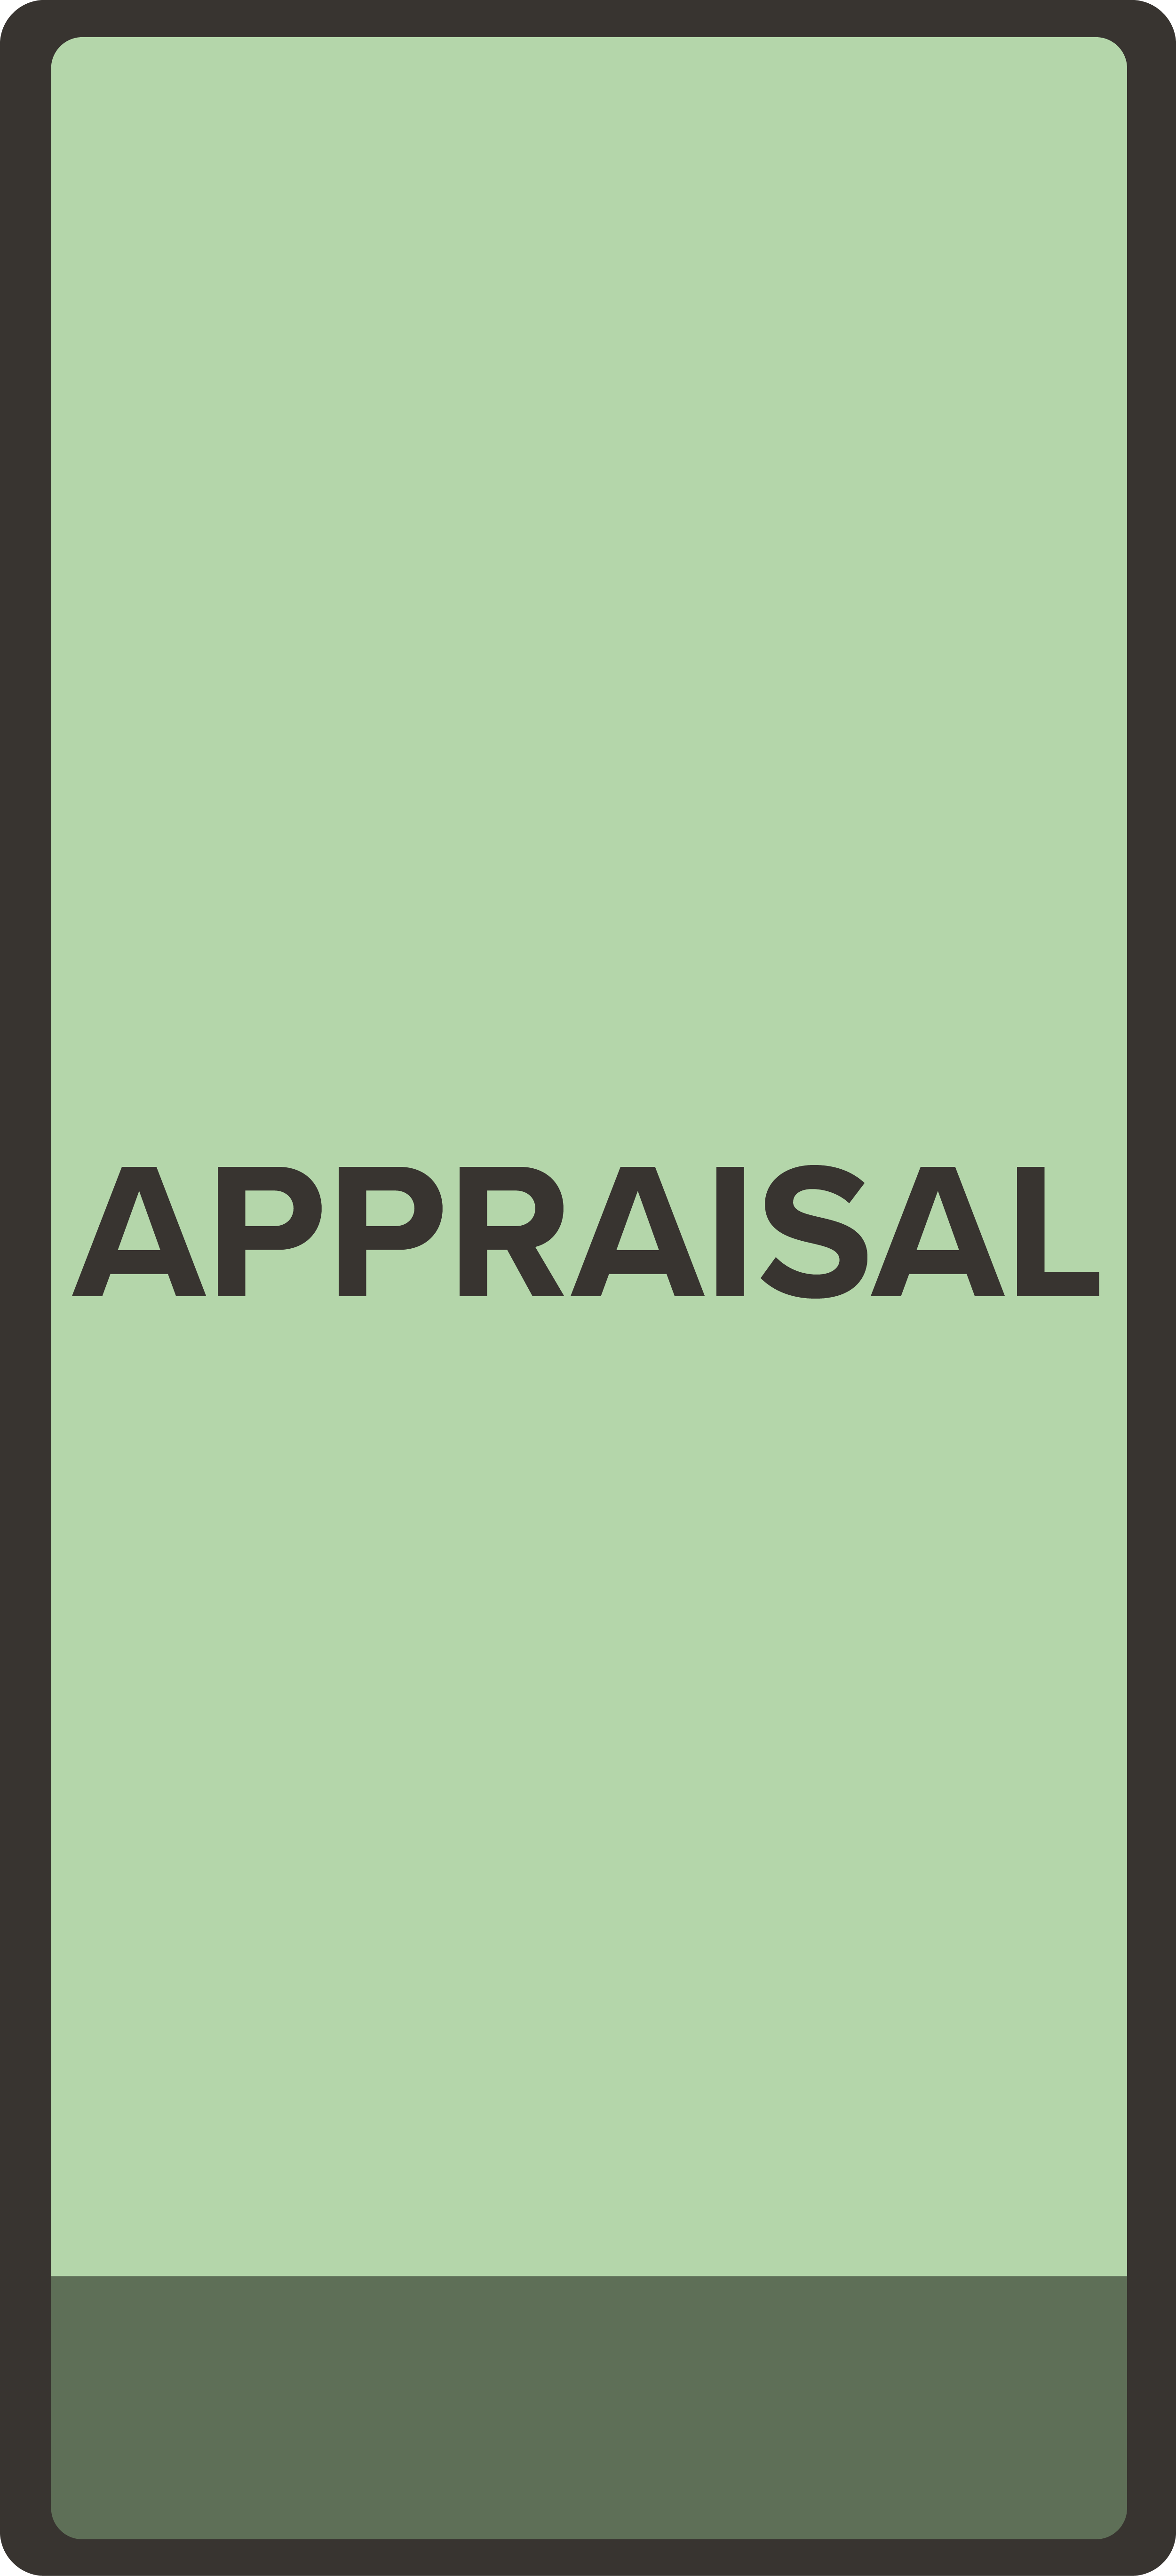 Appraisal Button